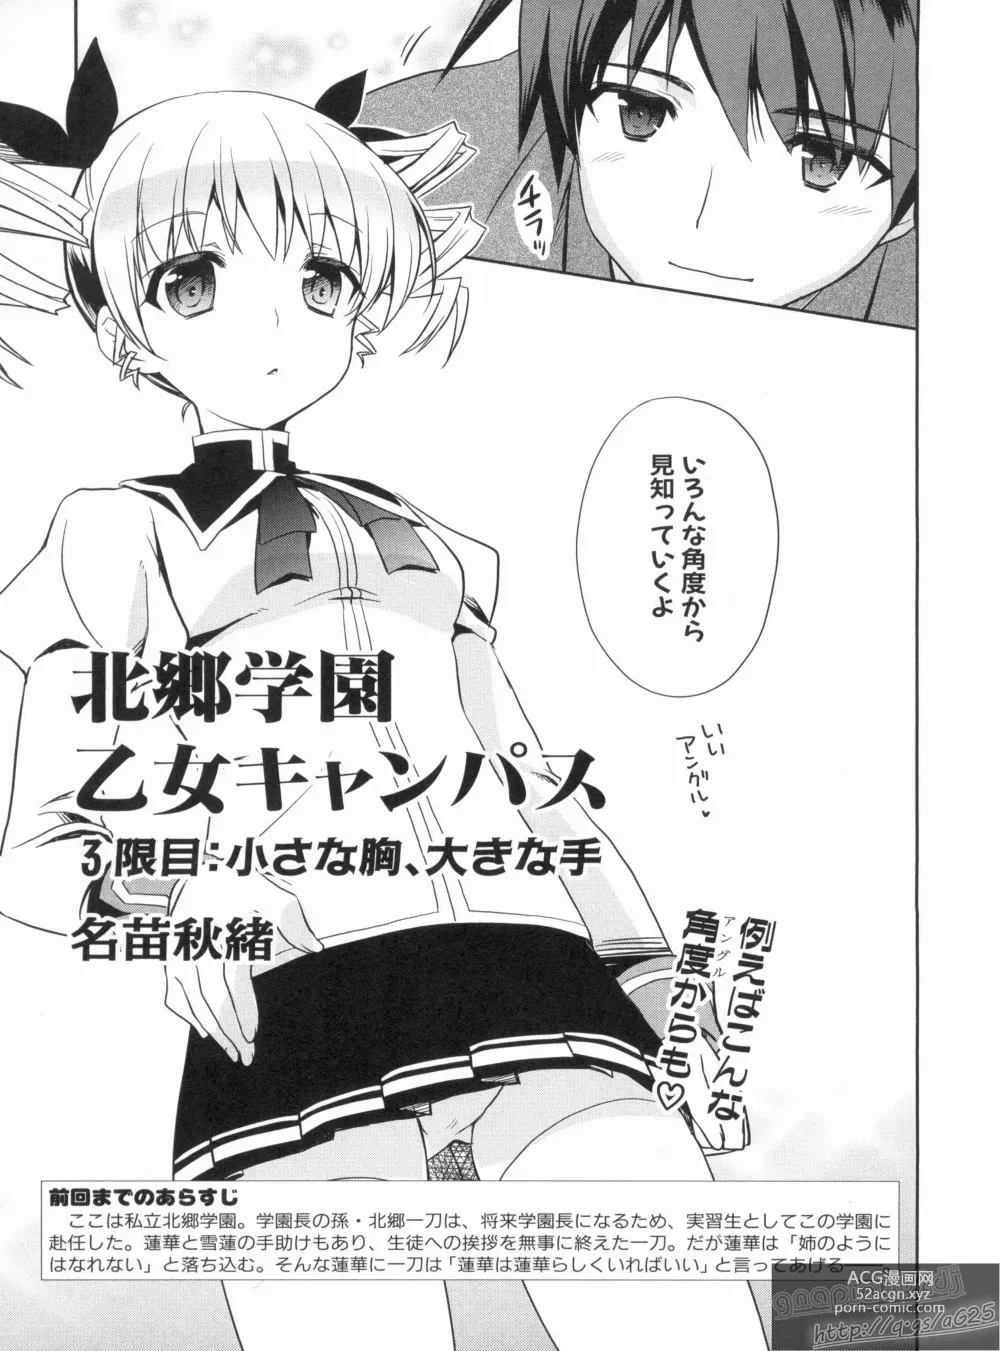 Page 9 of manga Shin Koihime Musou Gaishi Saiten VOL.3